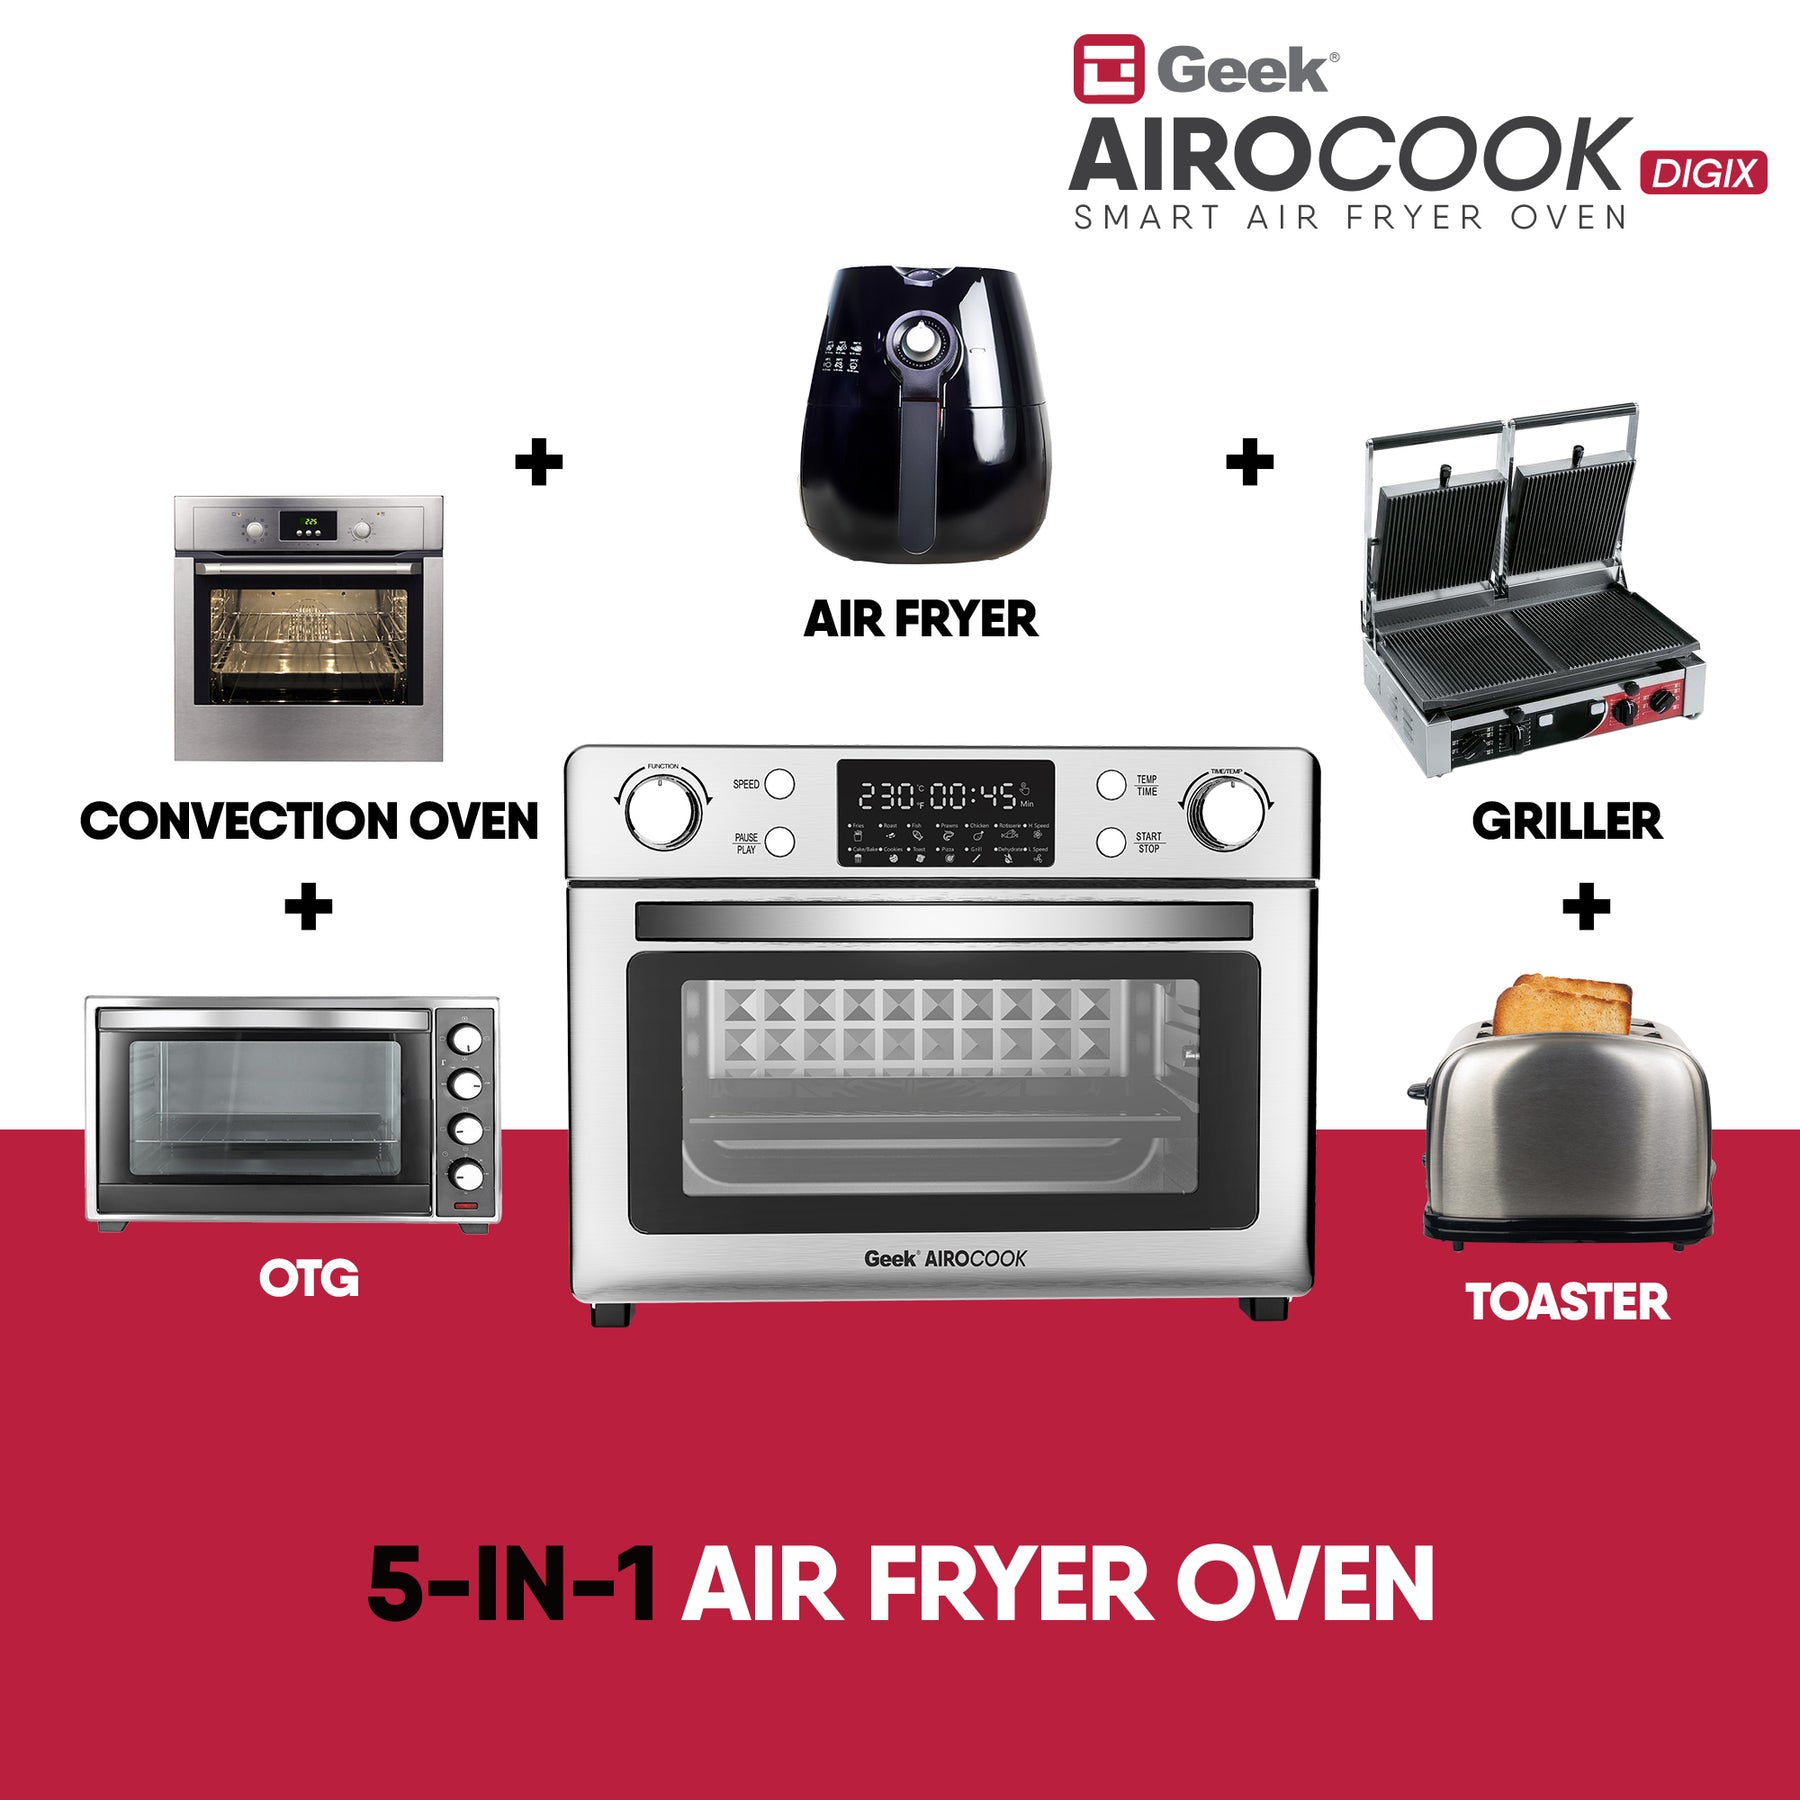 Geek AiroCook Digix 30L Air Fryer Oven